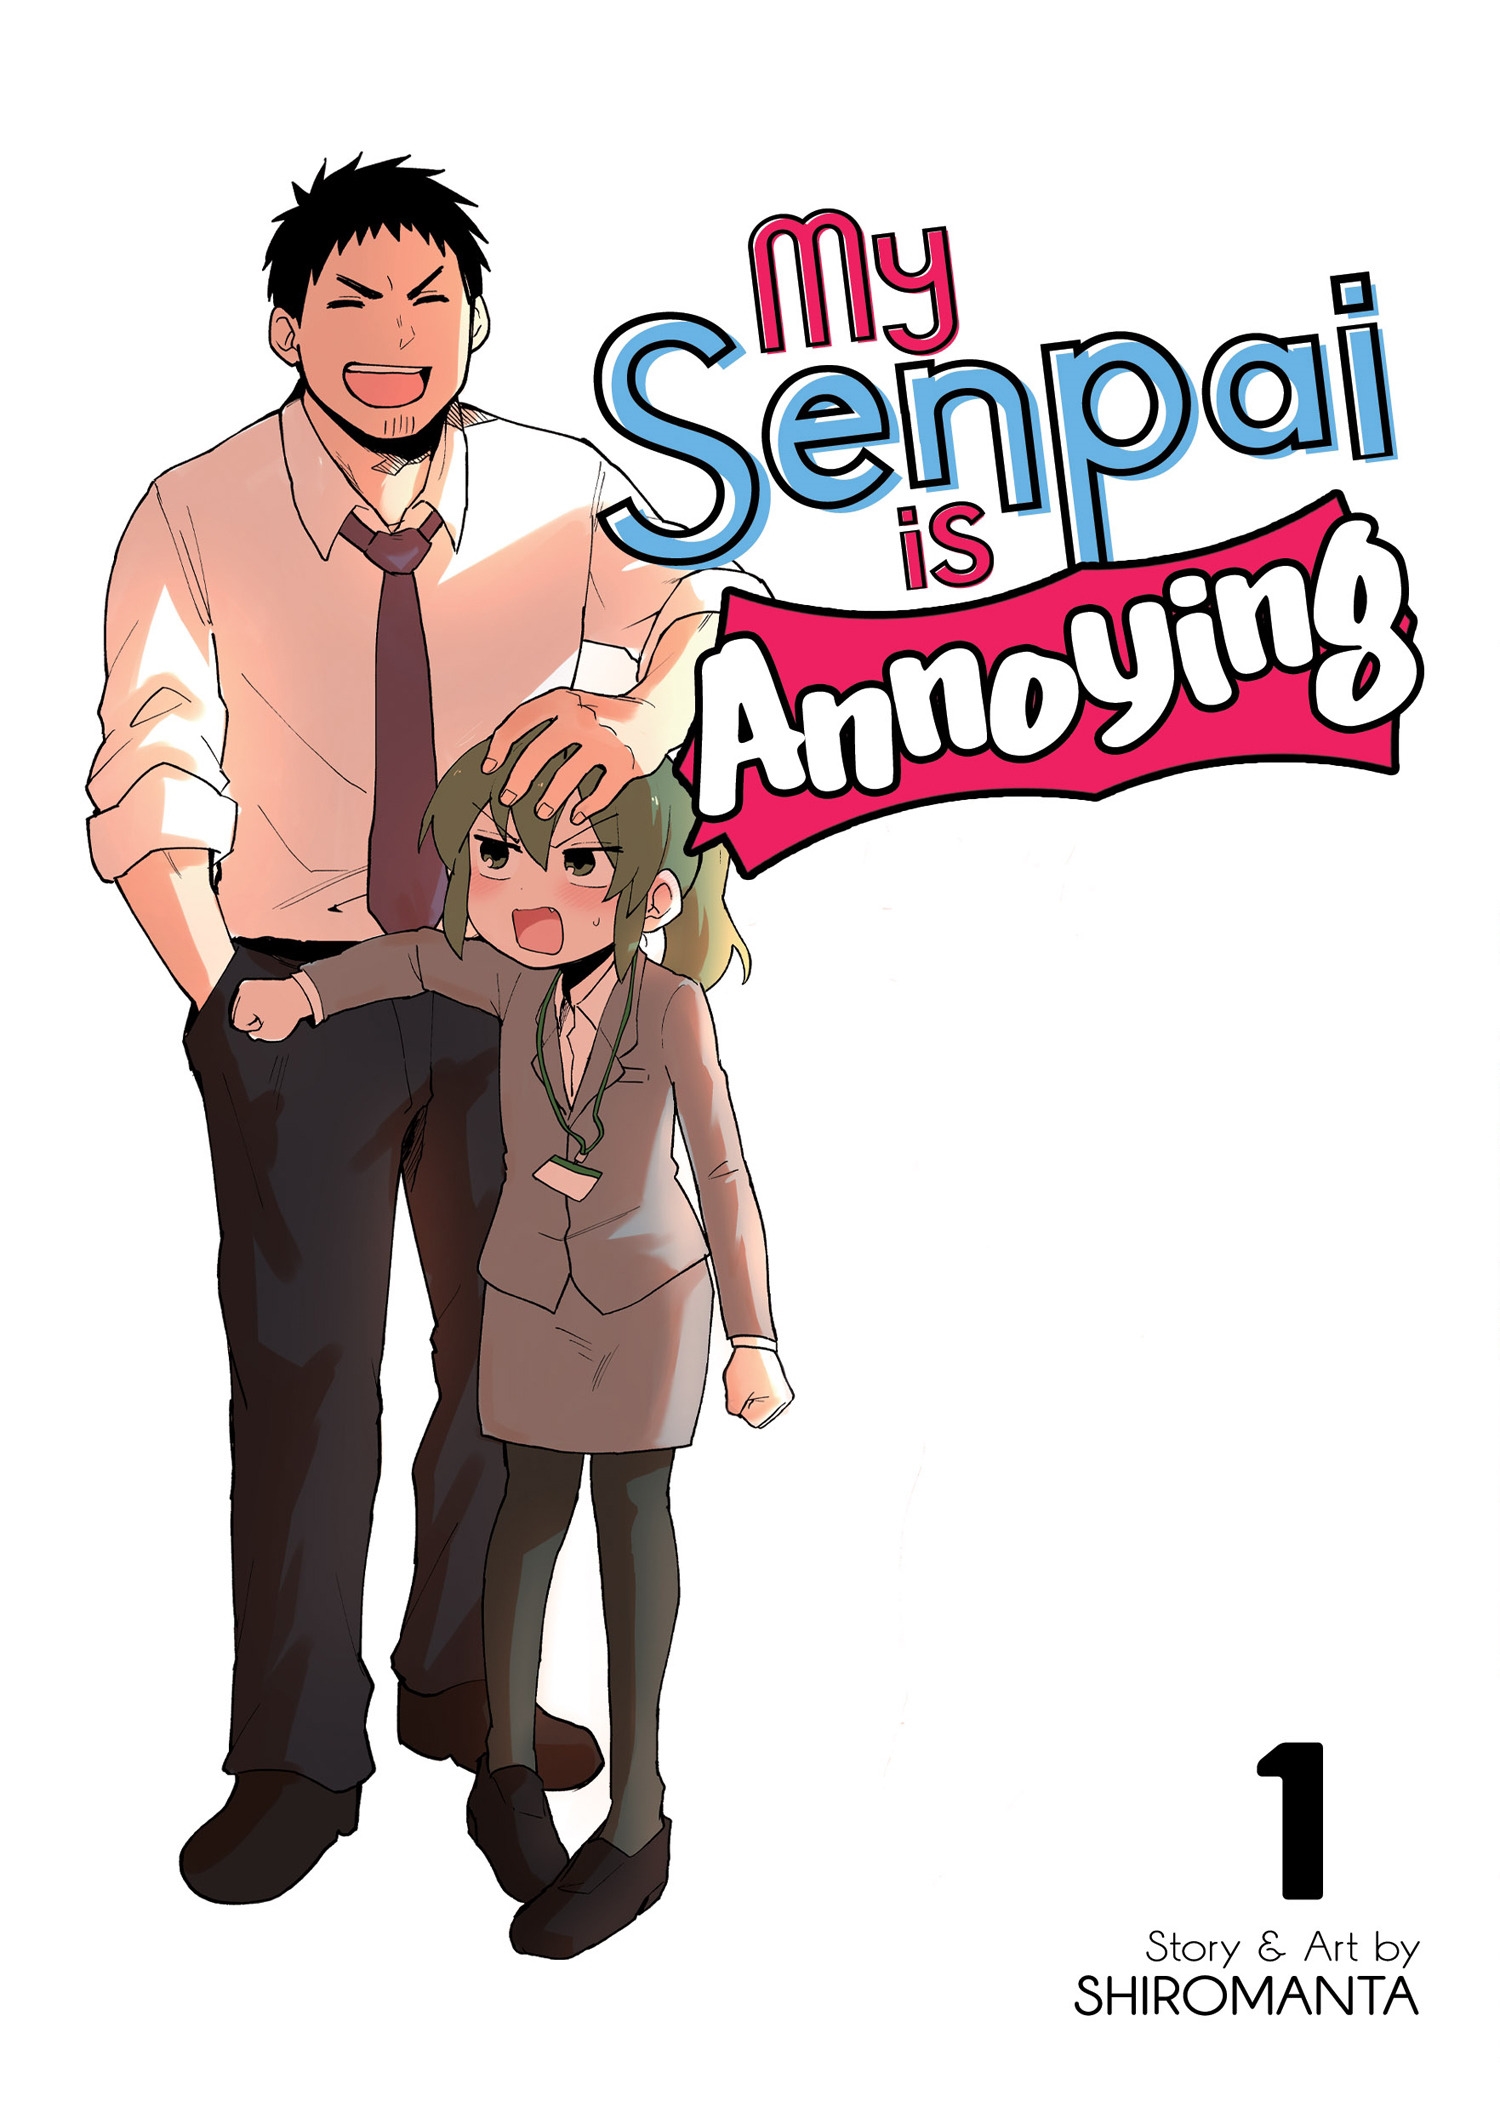 My Senpai is Annoying – Comédia romântica com adultos ganha novo